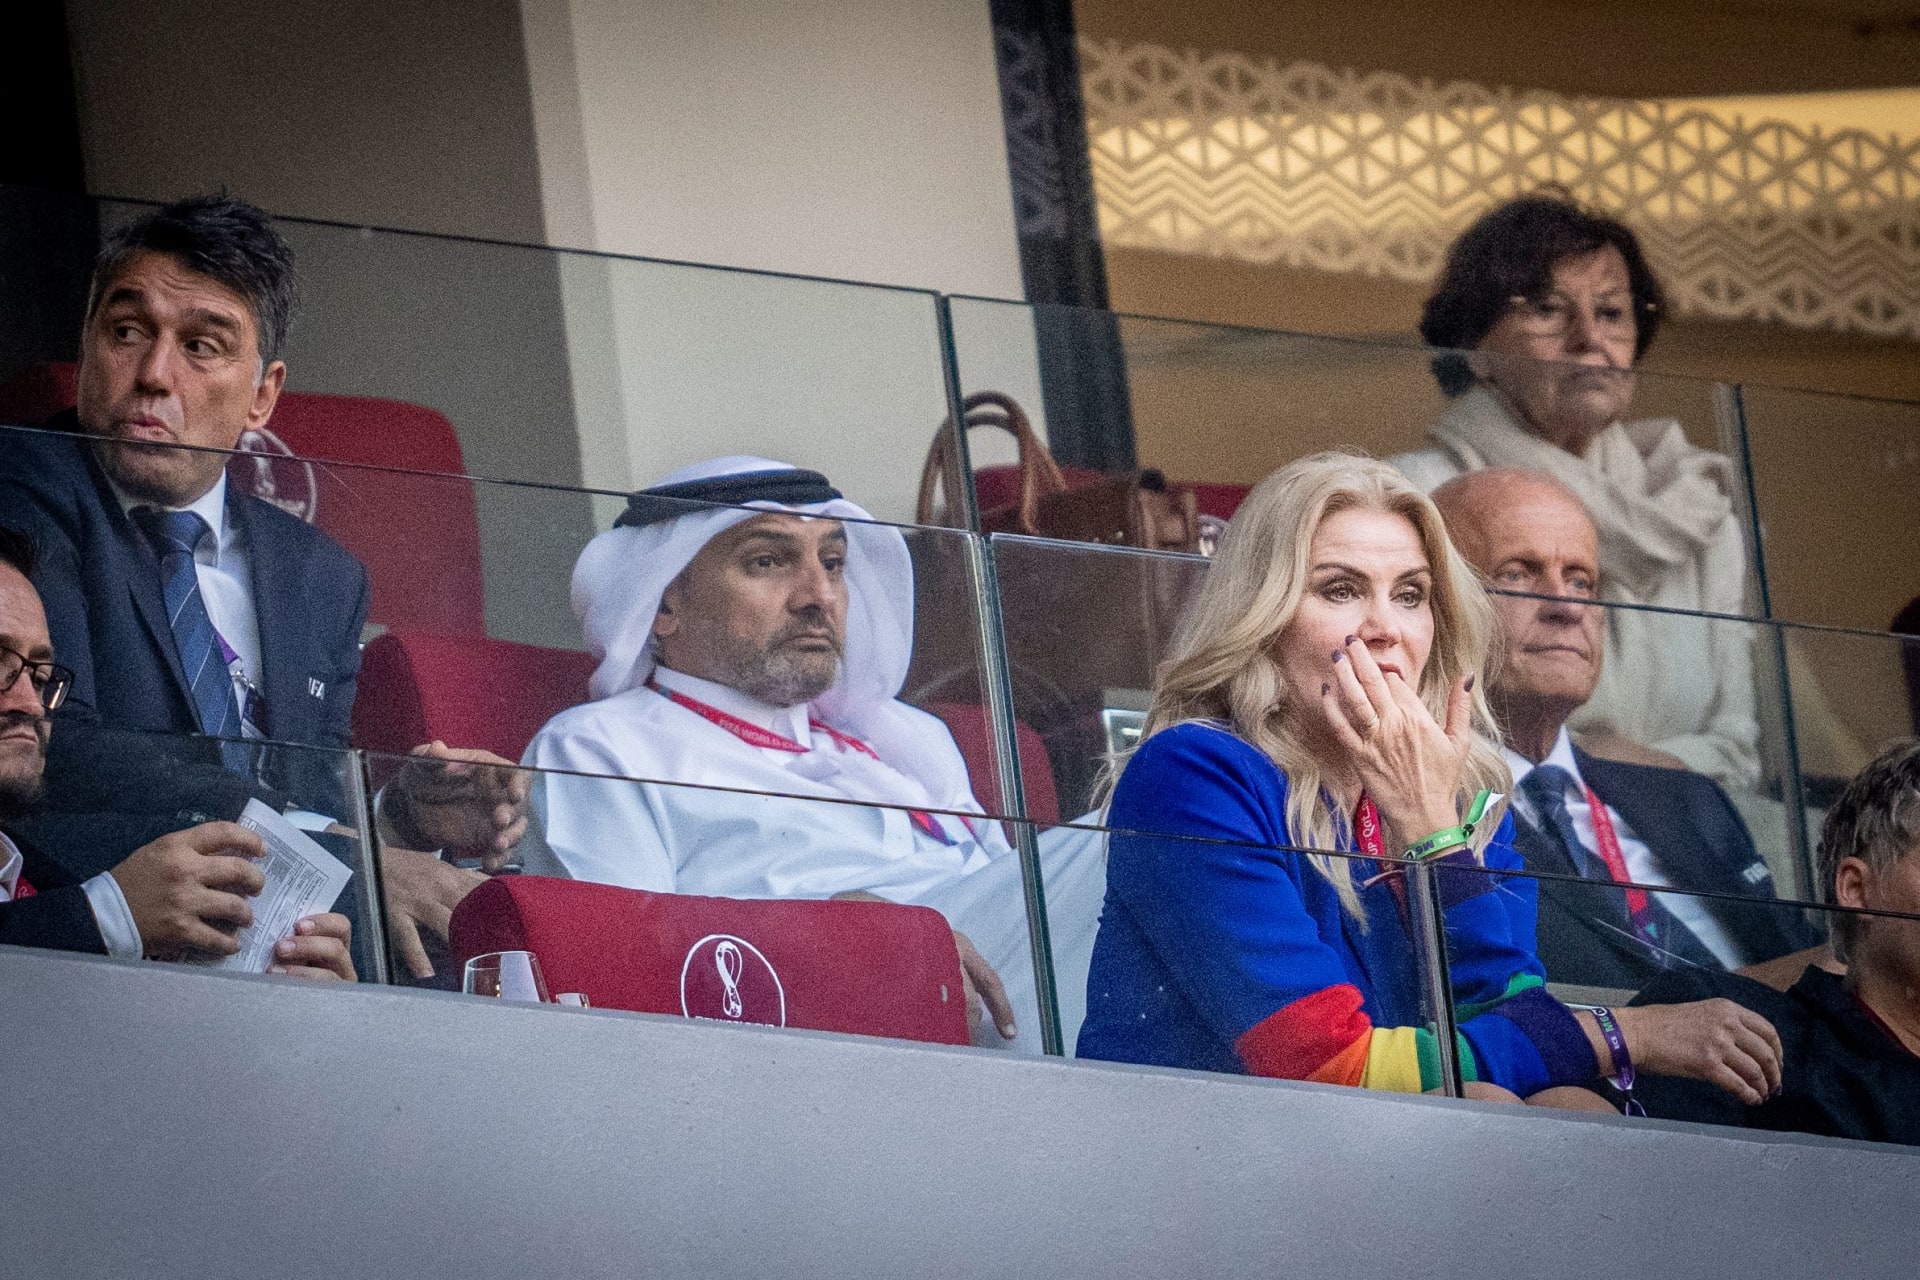 ترتدي رئيسة الوزراء الدنماركية السابقة هيلي ثورنينغ شميدت أكمام ملونة بألوان قوس قزح على ملابسها خلال مونديال قطر 2022